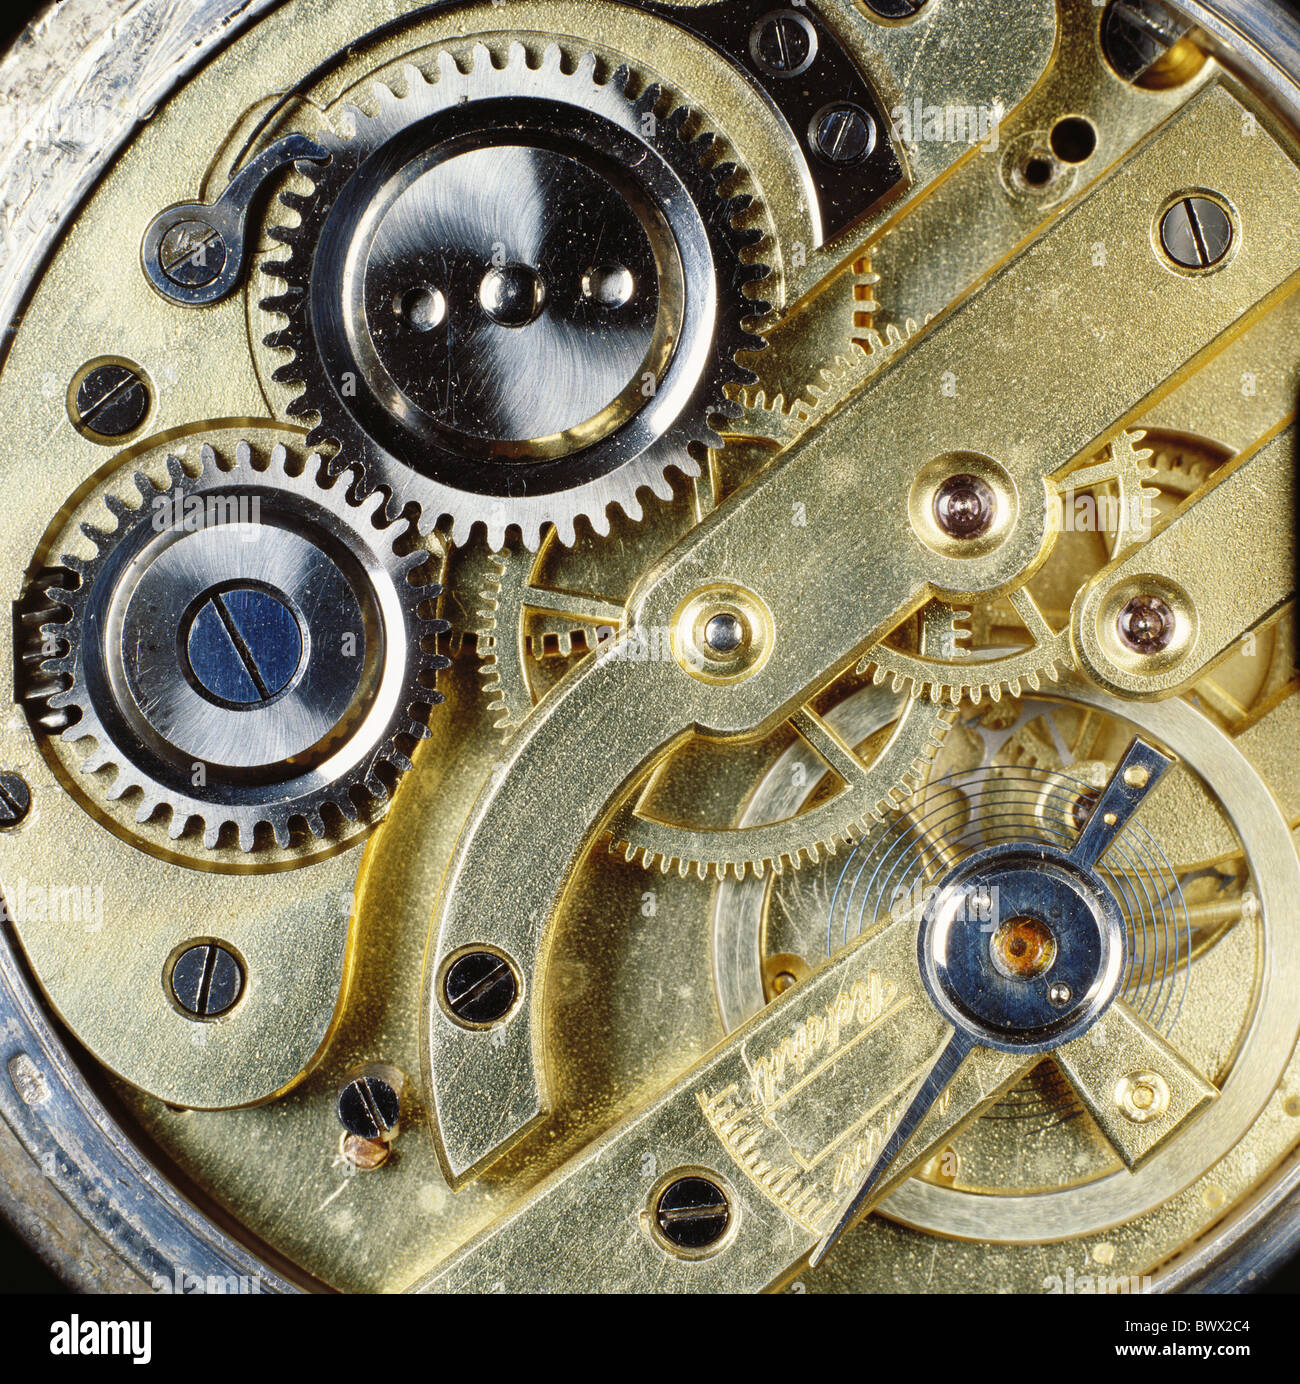 Uhr Uhr Uhrwerk Kaliber Mechanik Räderwerk Bewegung Taschenuhr Uhren Uhren  Stockfotografie - Alamy